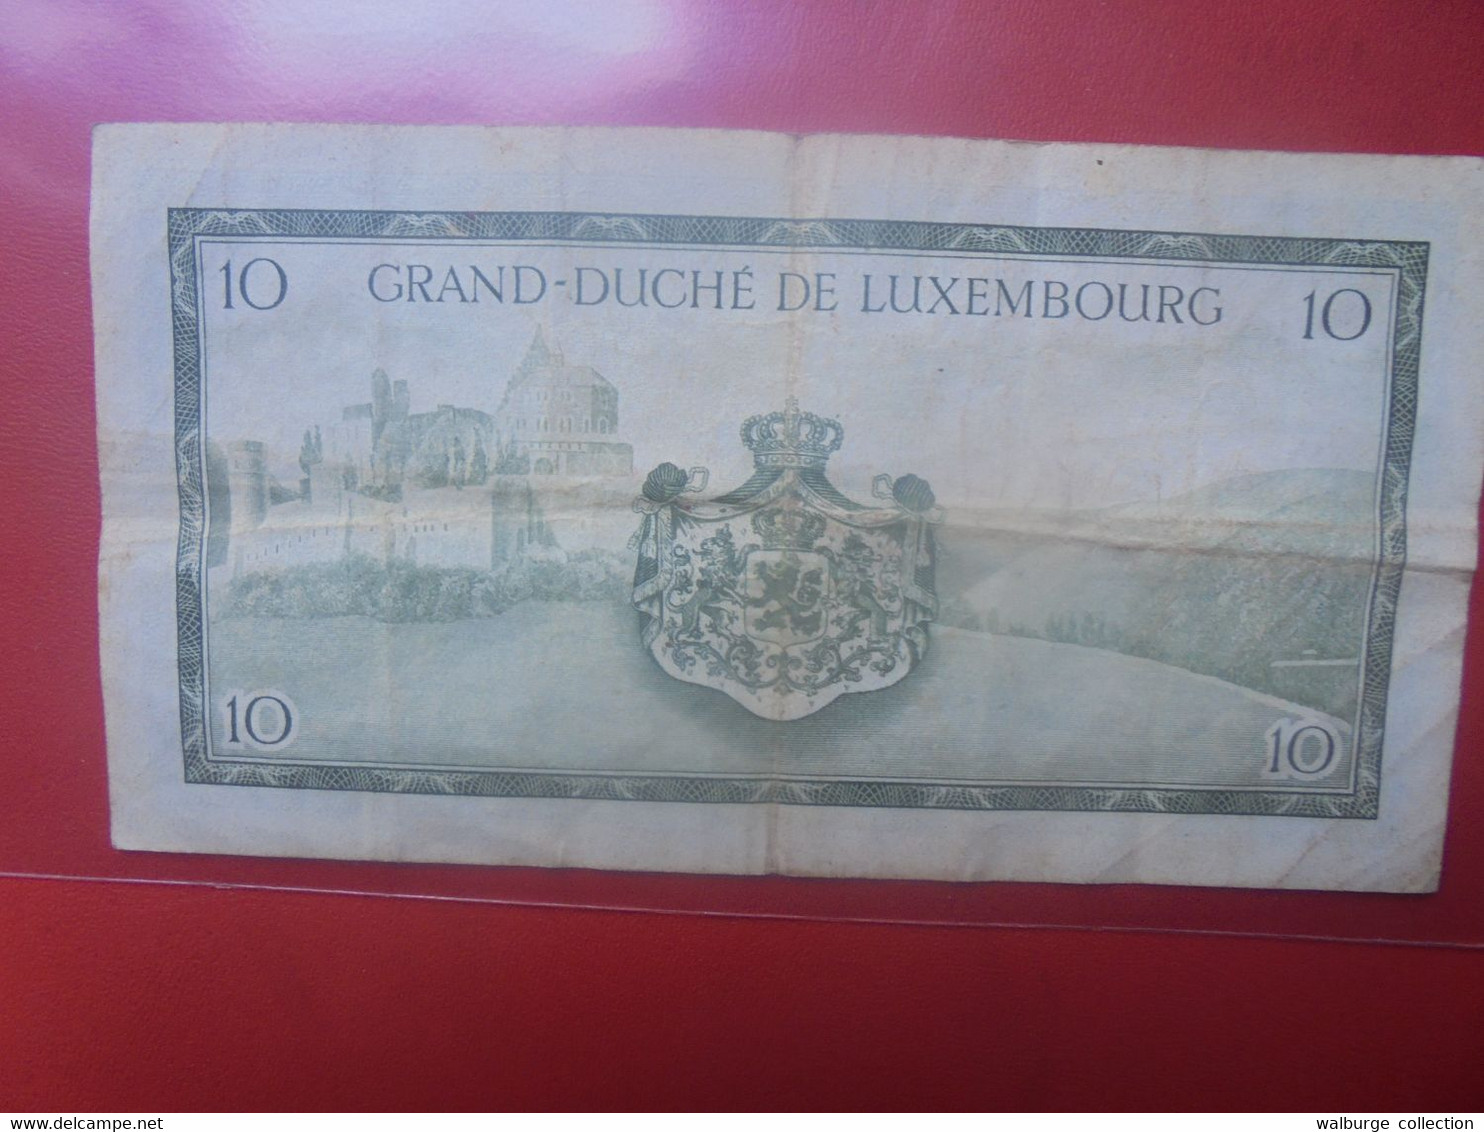 LUXEMBOURG 10 Francs 1954 Préfix "G" Circuler (L.4) - Luxemburg